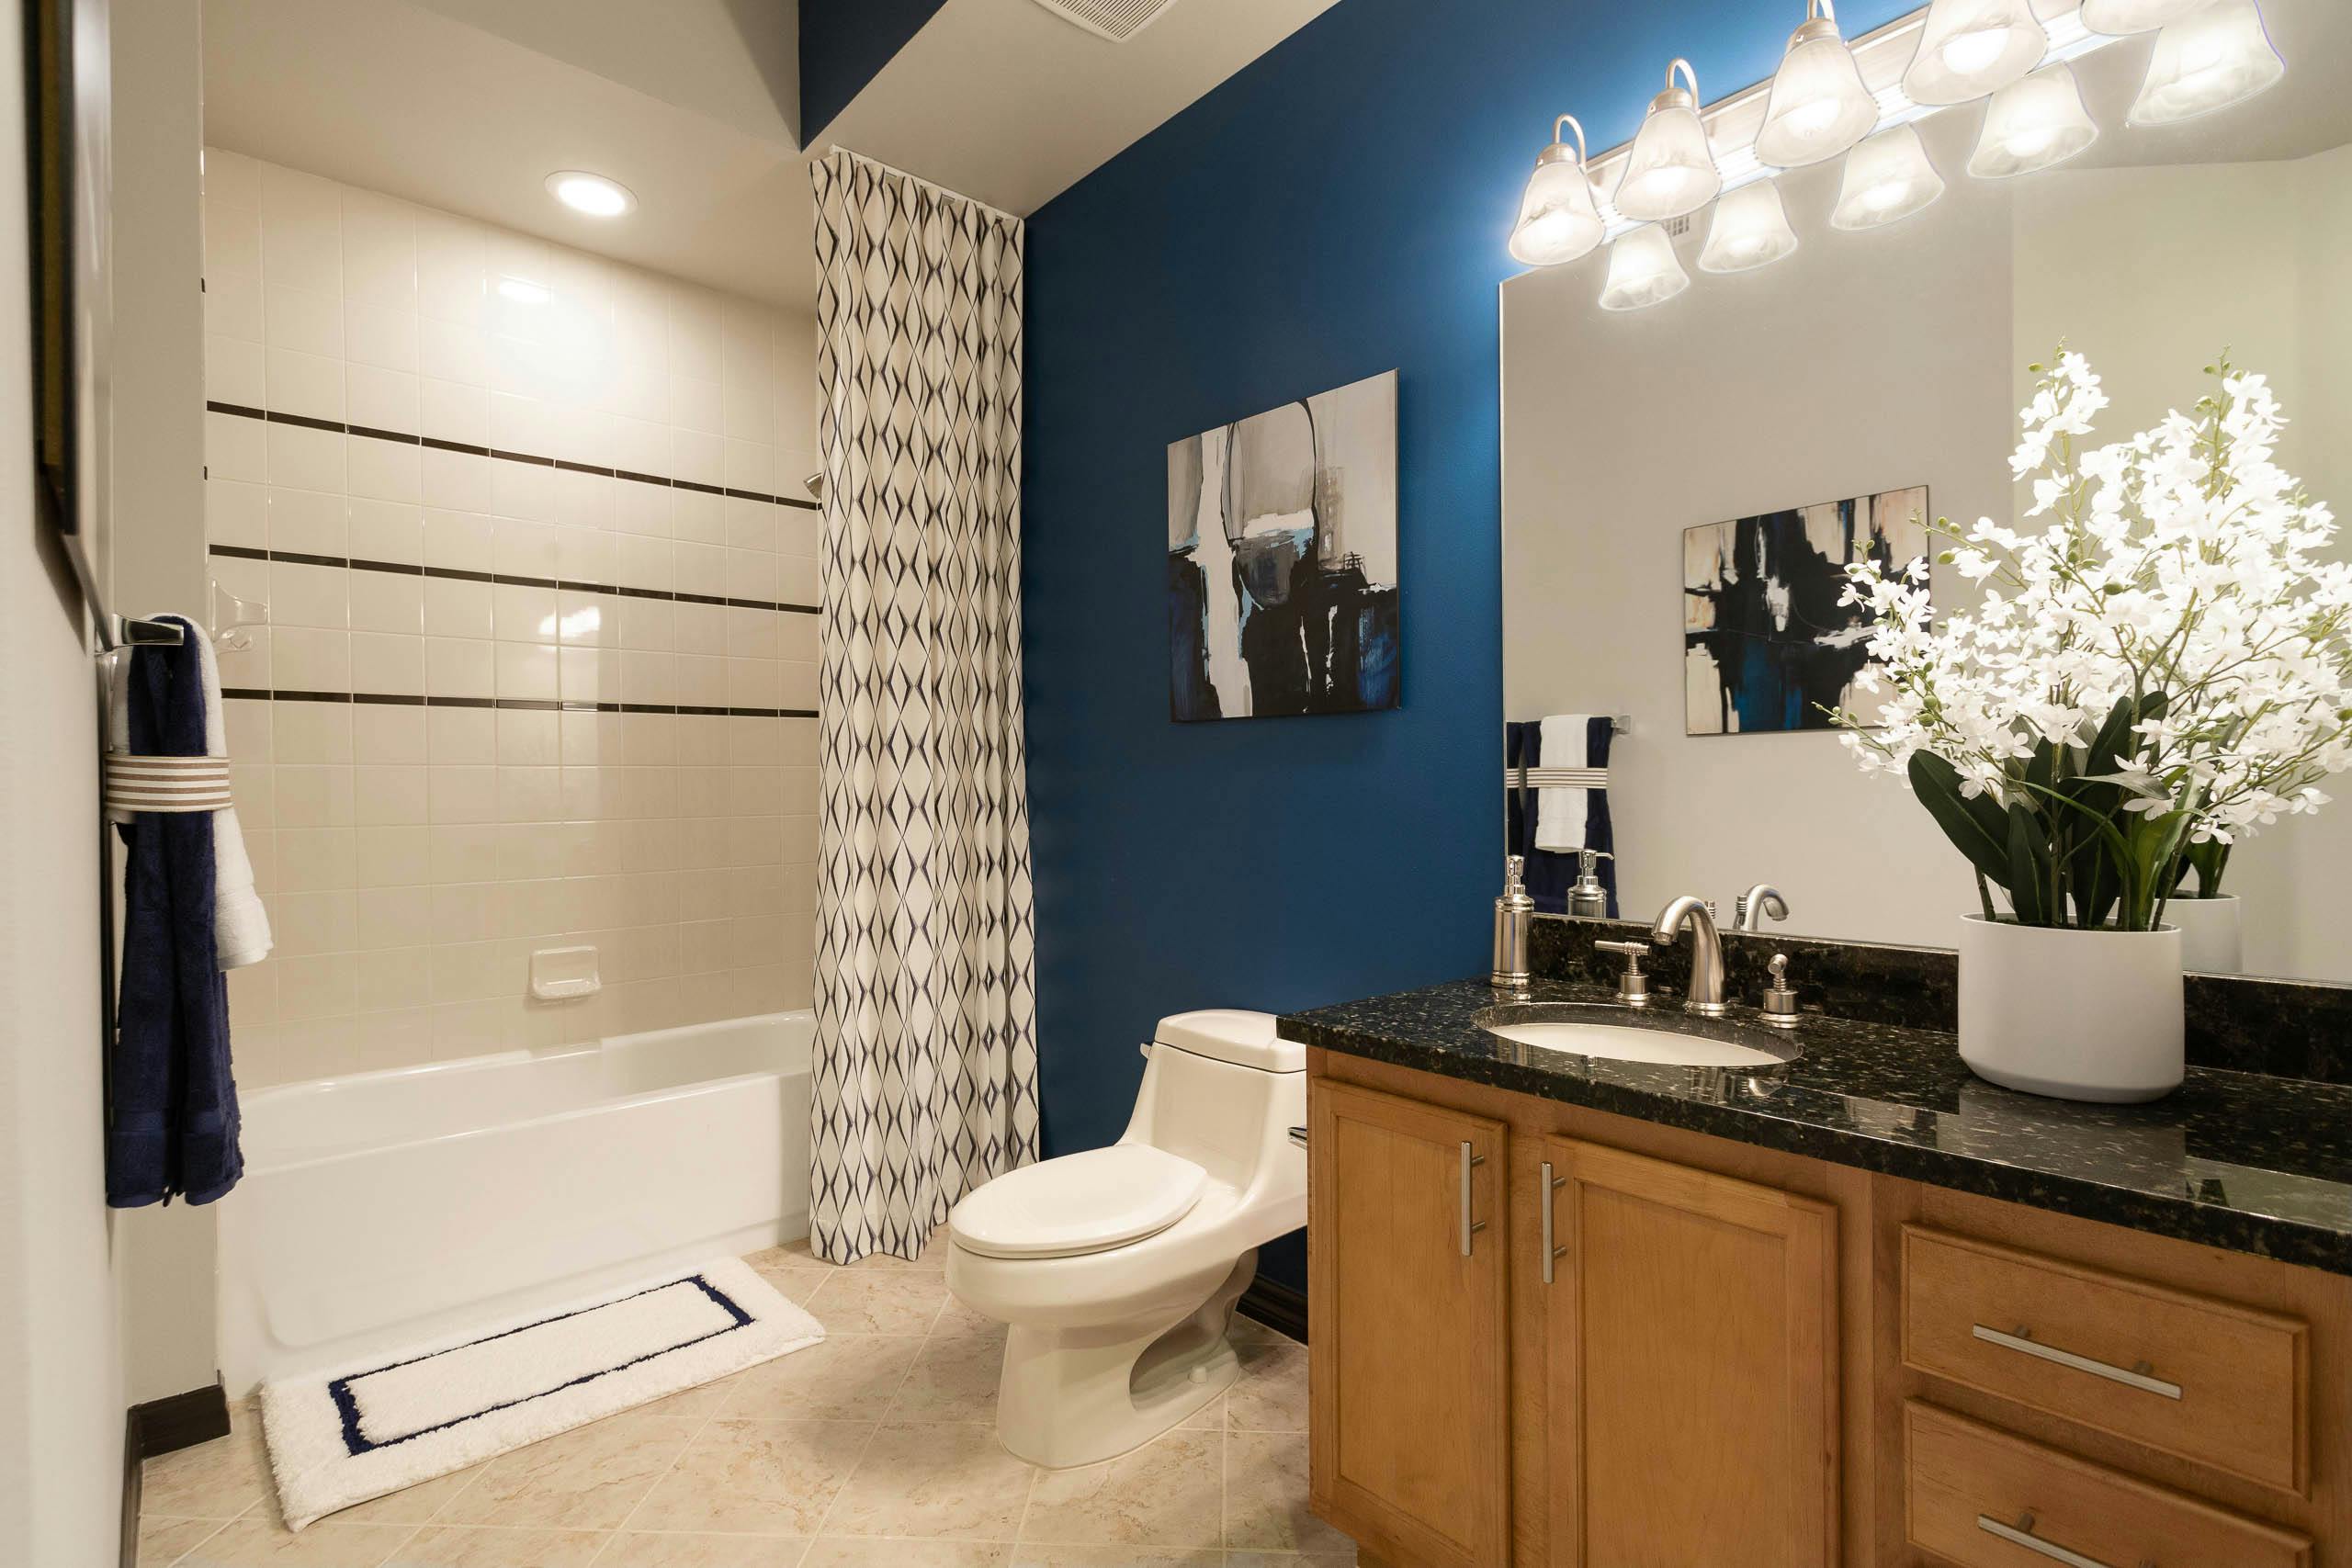 Al Bathroom Decor Ideas Amli, Bathroom Set Ideas For Apartments